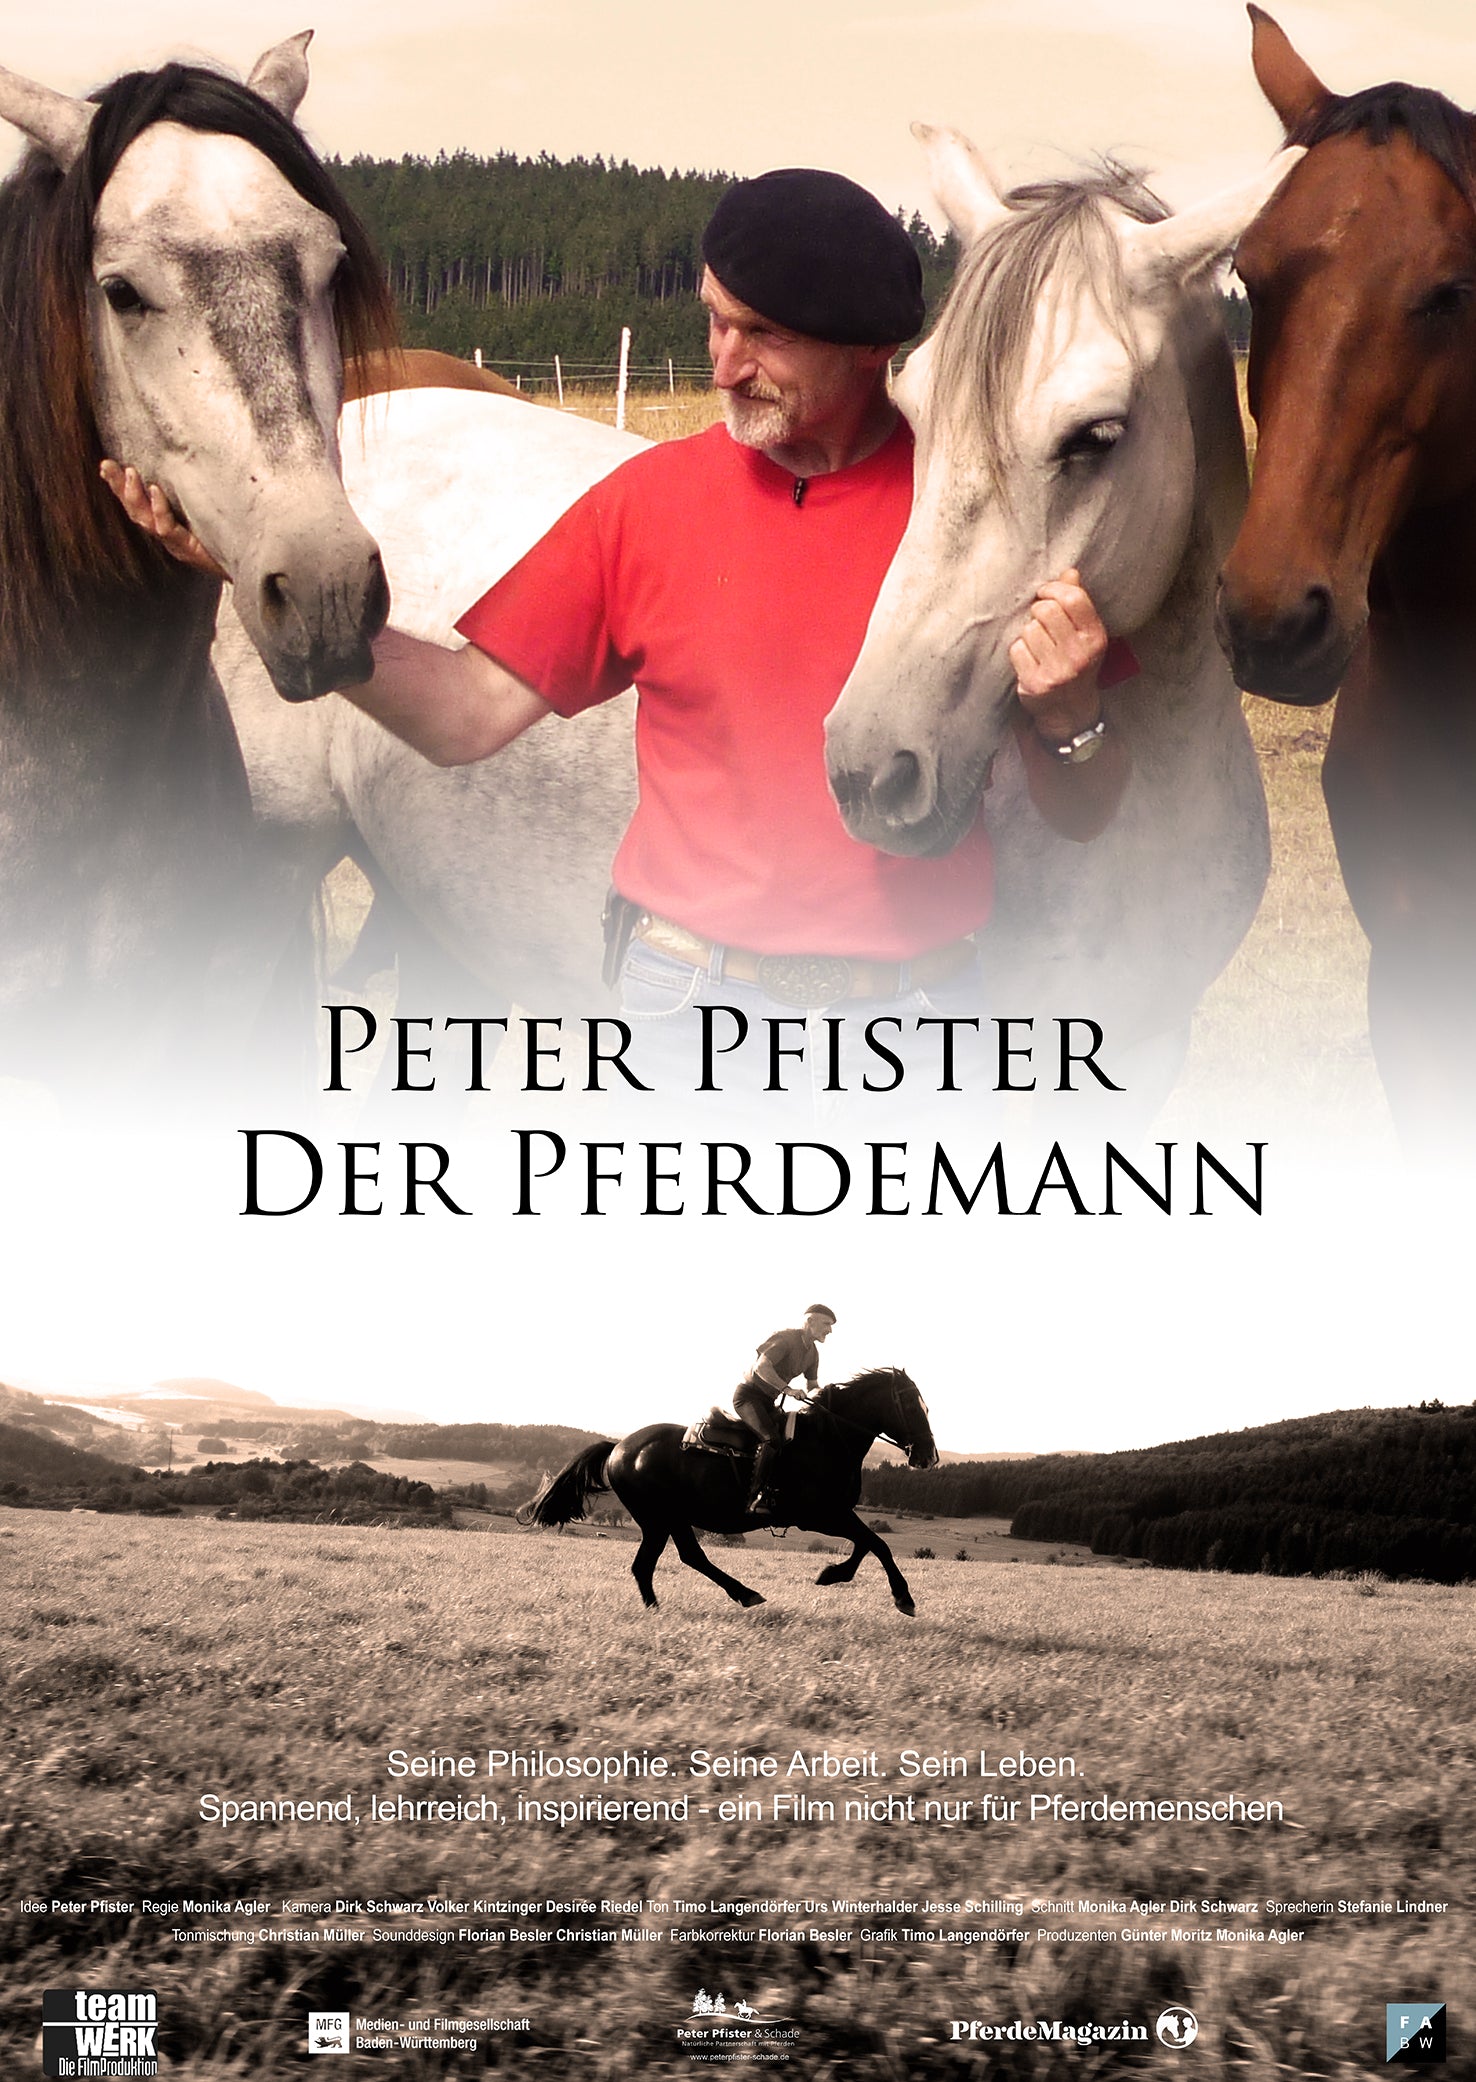 NOUVEAU DVD « PETER PFISTER LE CAVALIER »